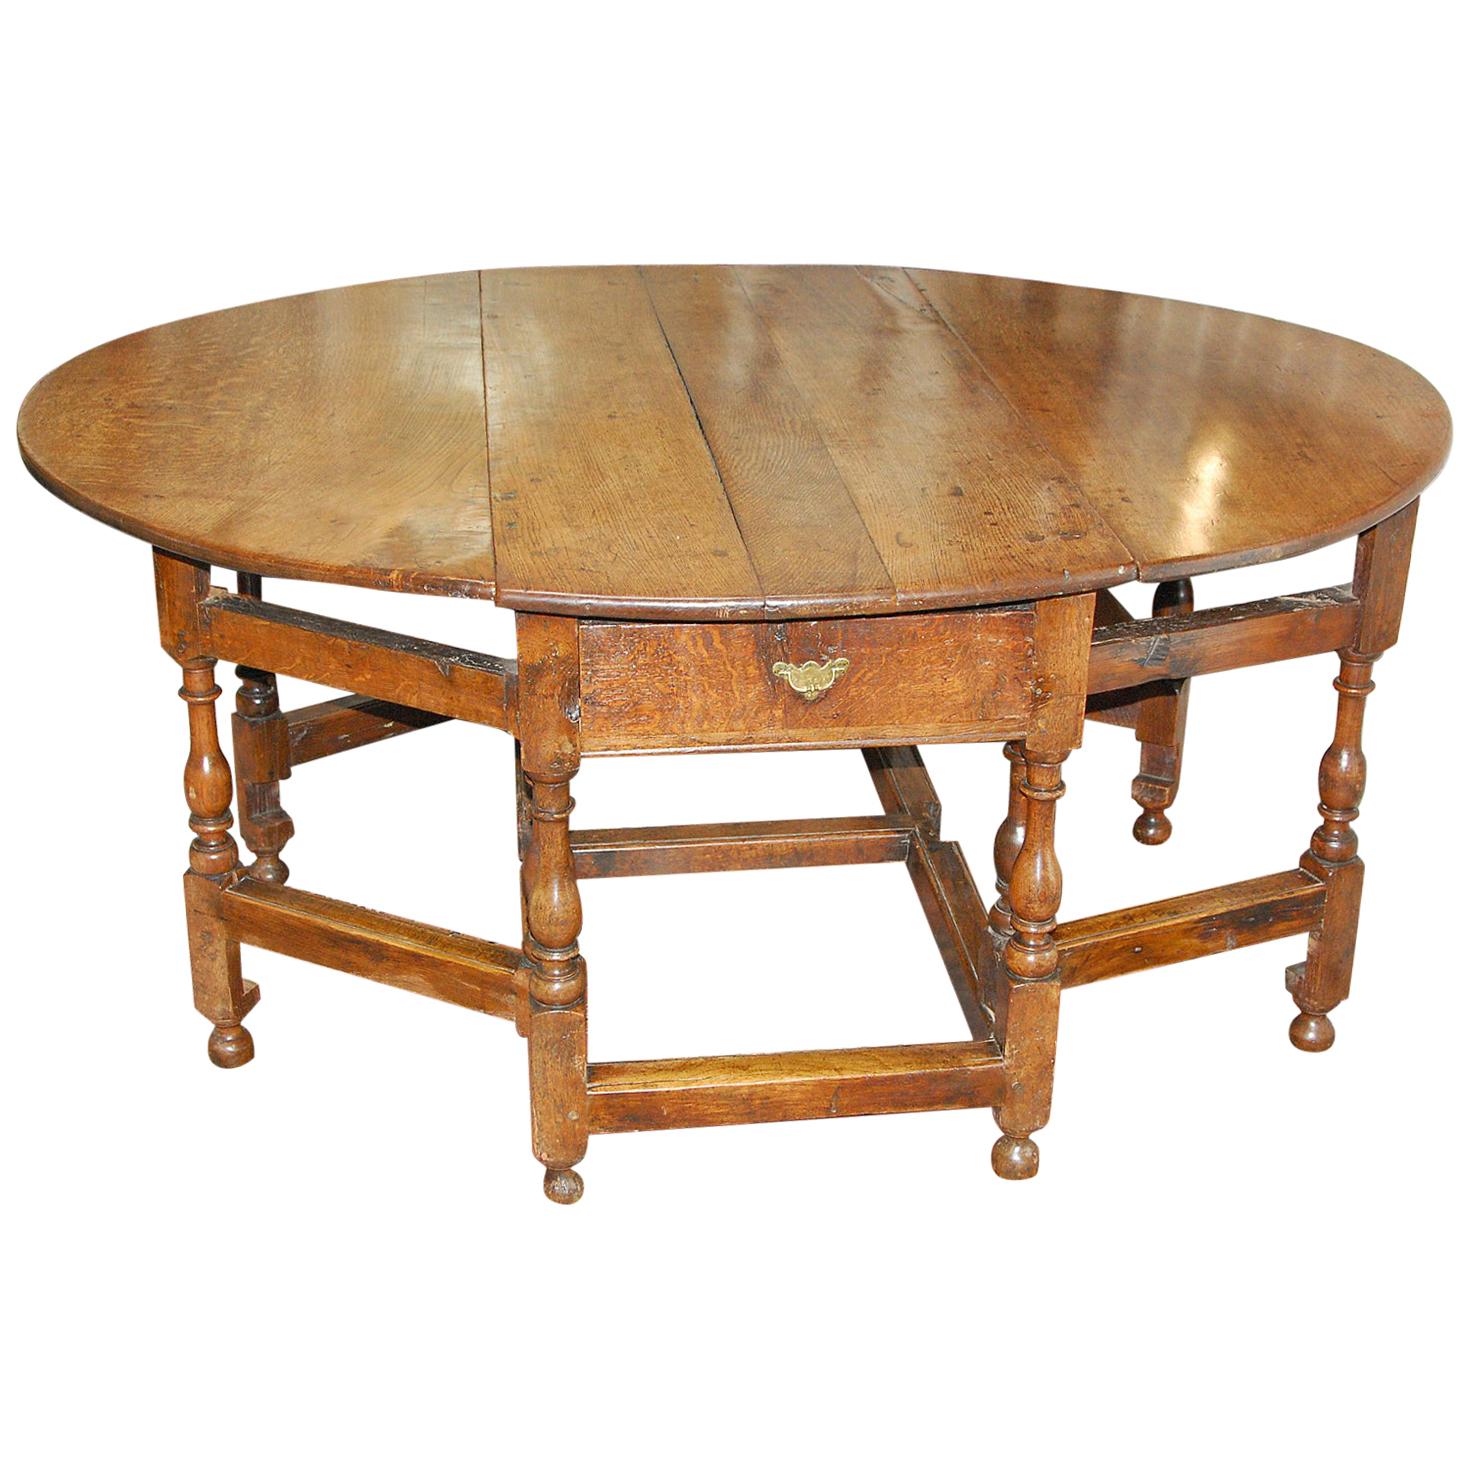 Grande table de salle à manger en chêne du début du XVIIIe siècle:: à double pieds pivotants et à plateau en forme de goutte